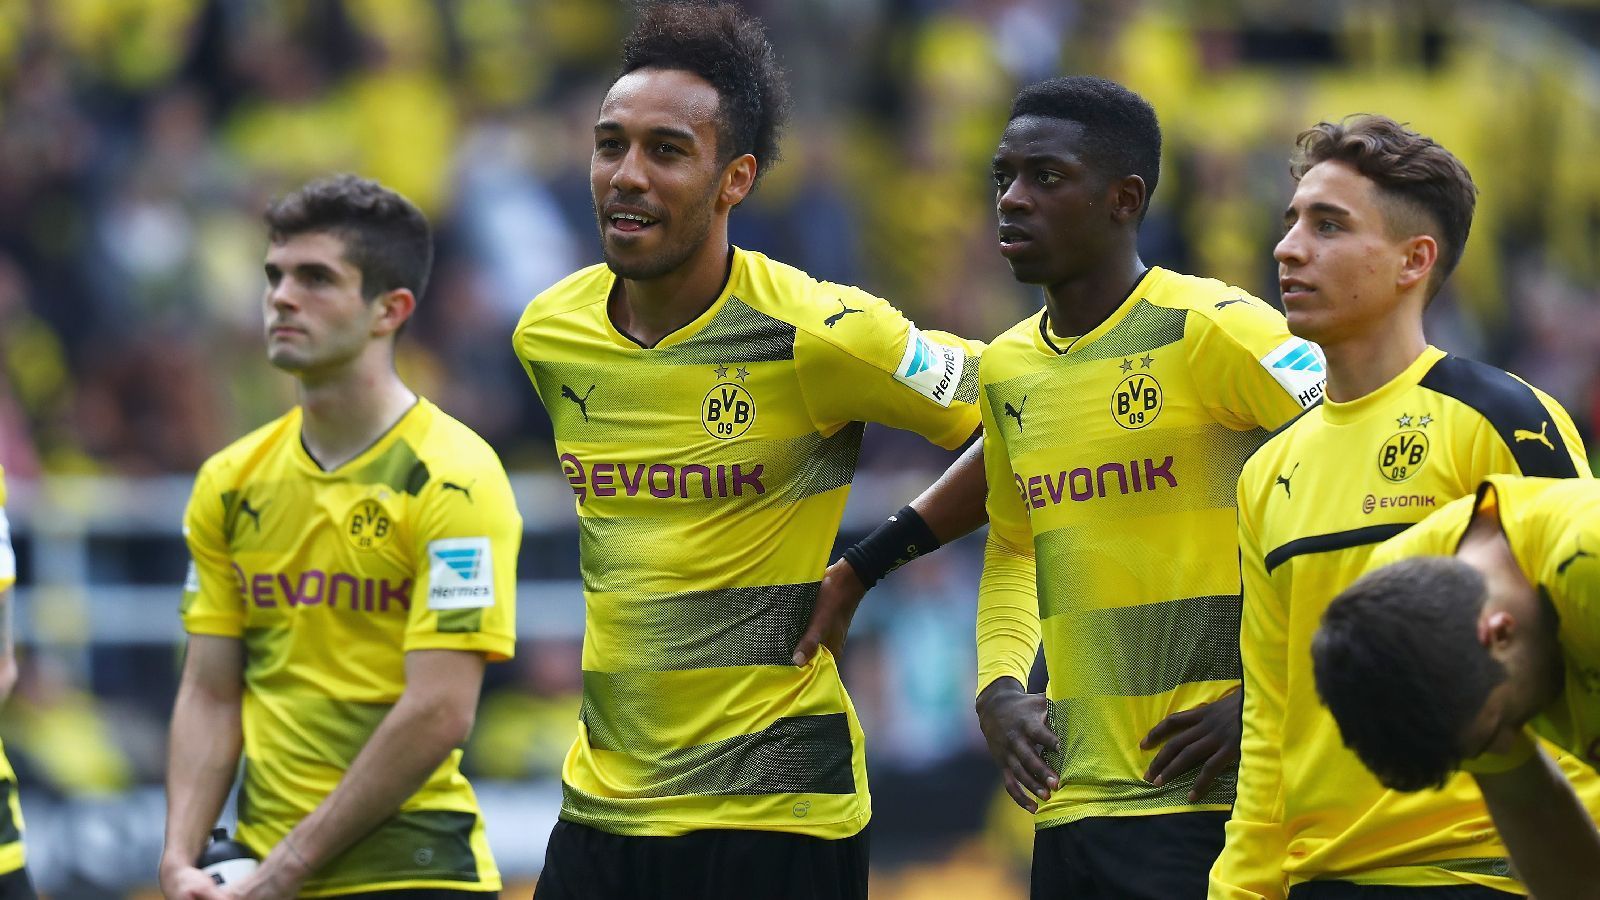 
                <strong>Platz 11: Borussia Dortmund</strong><br>
                Die meisten Transfereinnahmen bei den deutschen Teams konnte in der jüngeren Vergangenheit Borussia Dortmund verbuchen - und damit findet sich der BVB seit der Saison 2009/2010 insgesamt auf Platz 11 wieder.Generierte Transfereinahmen seit der Saison 2009/10: 731,17 Mio. EuroRekordverkäufe: Ousmane Dembele (Saison 17/18 für 125 Mio. Euro)                         
              